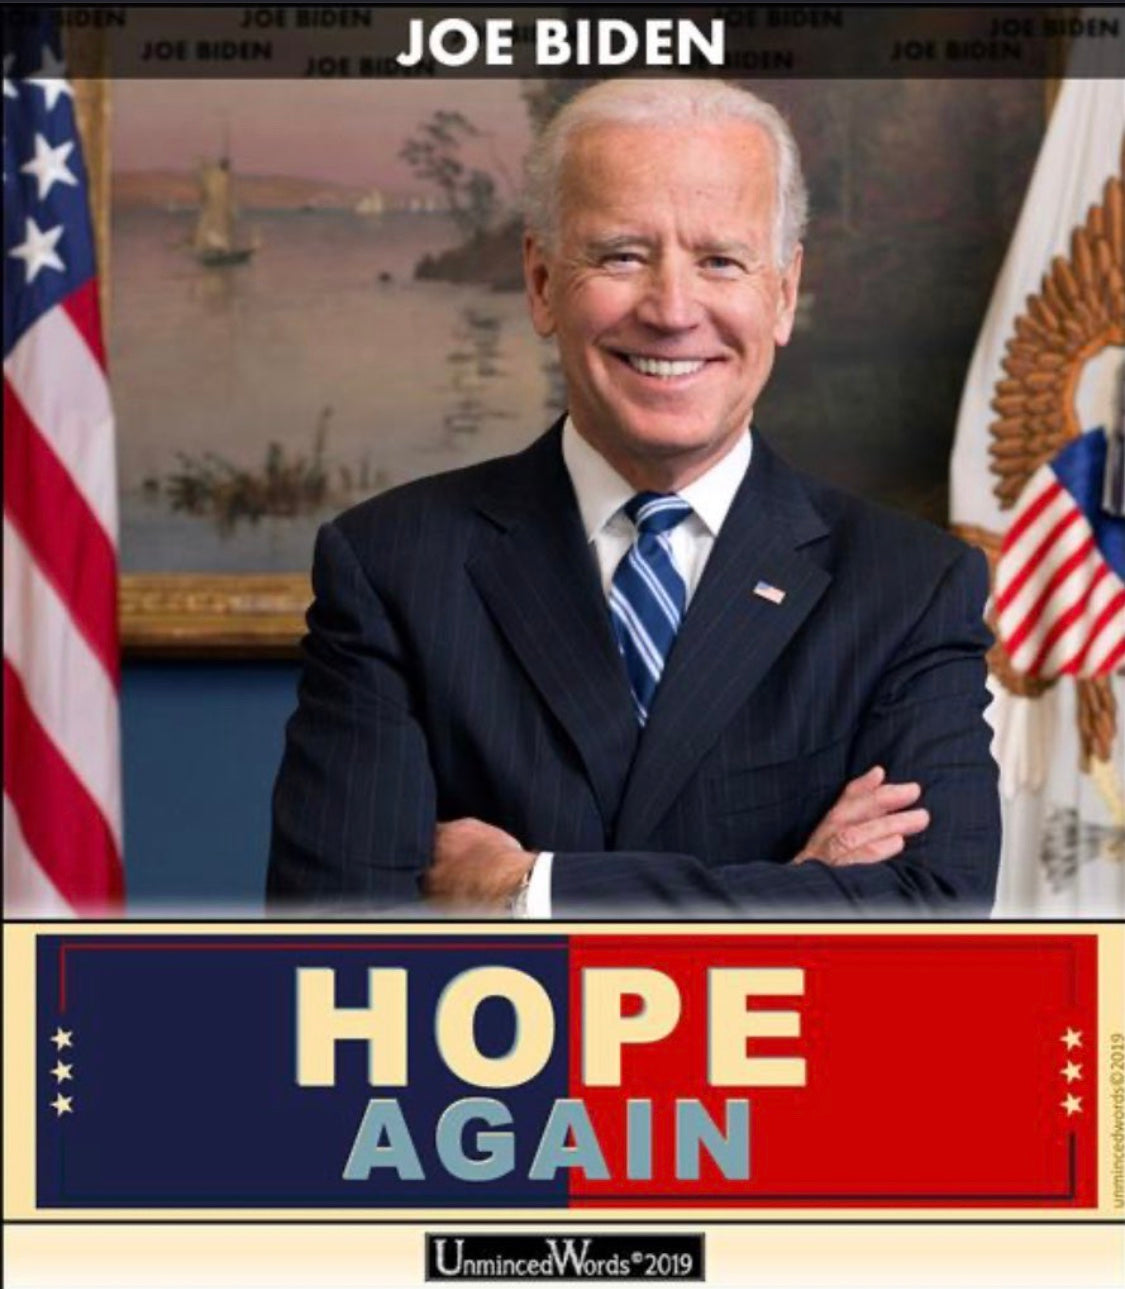 If Joe Biden give you Hope Again...